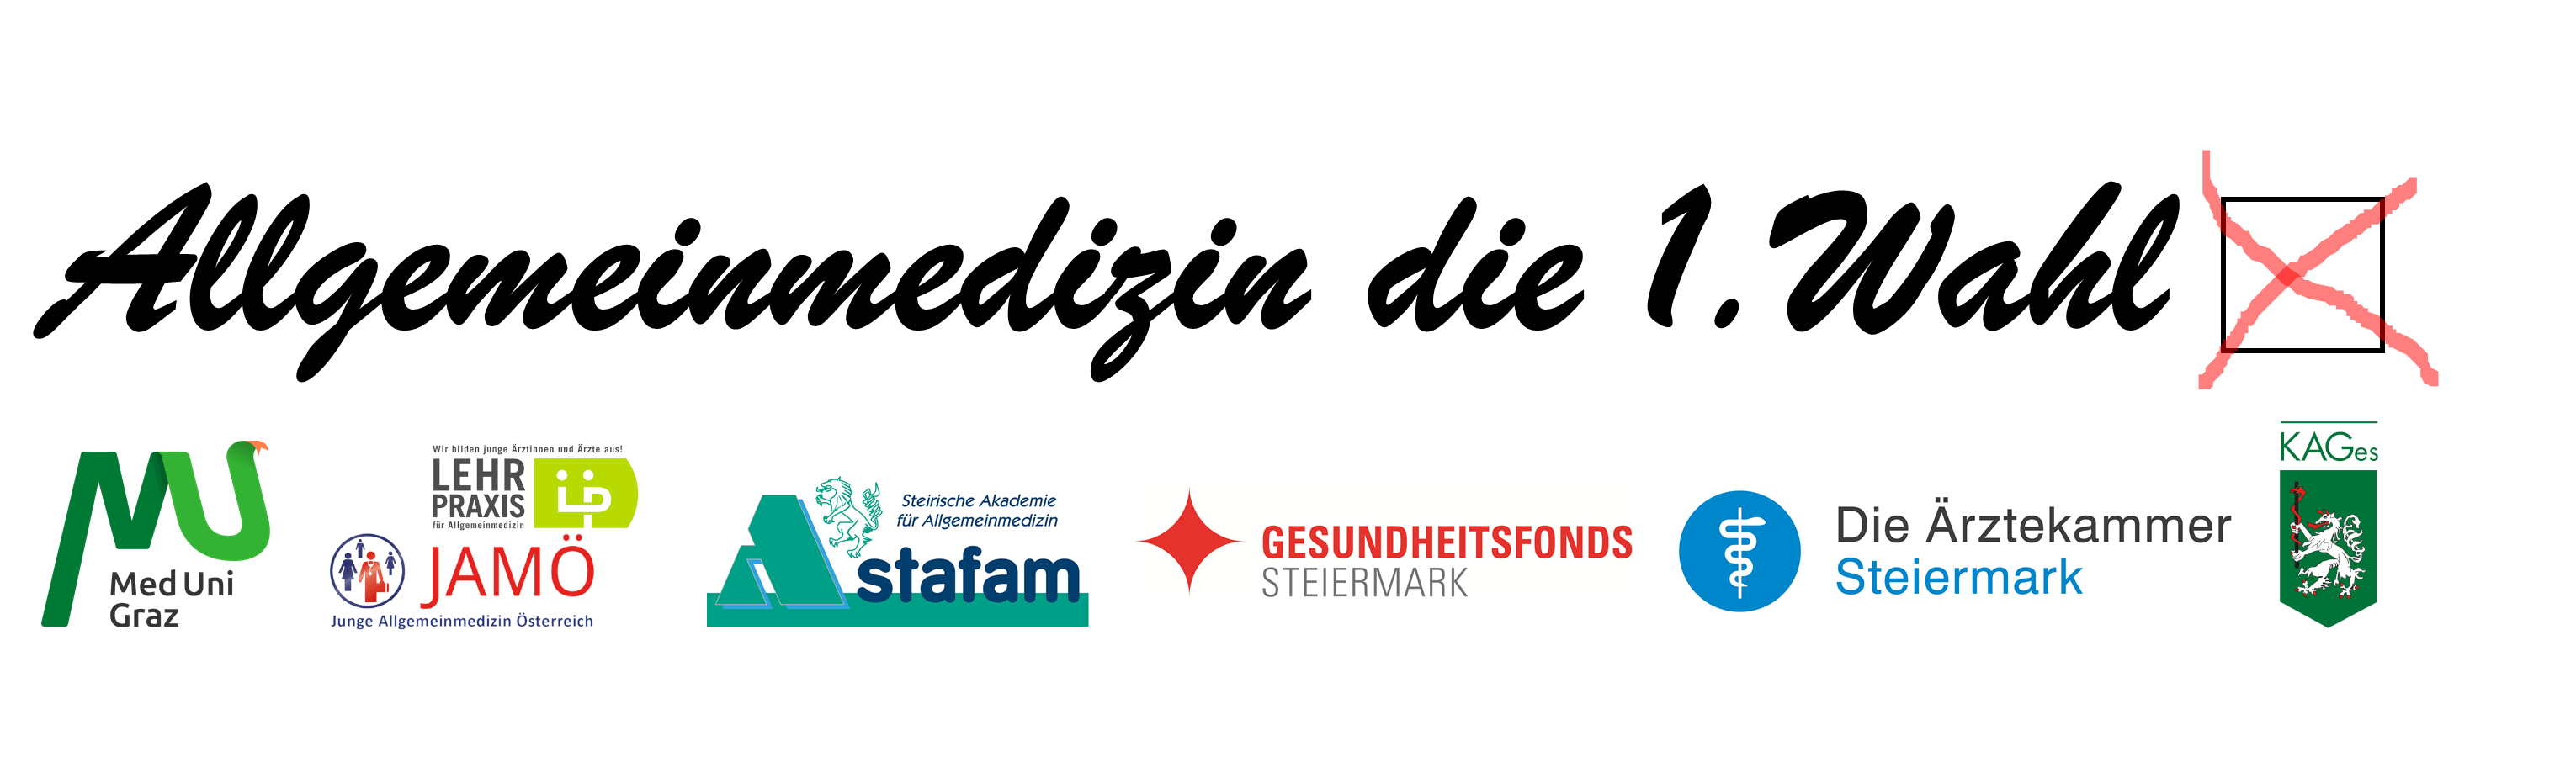 Ein großer Schriftzug "Allgemeinmedizin die 1. Wahl" mit einem quadratischen Kästchen, indem mit rot ein x angekreuzt ist. Darunter befinden sich die Logos der Medizinischen Universität Graz, des JAMÖ, stafam, Gesundheitsfonds Steiermark, der Ärztekammer Steiermark und der KAGes.